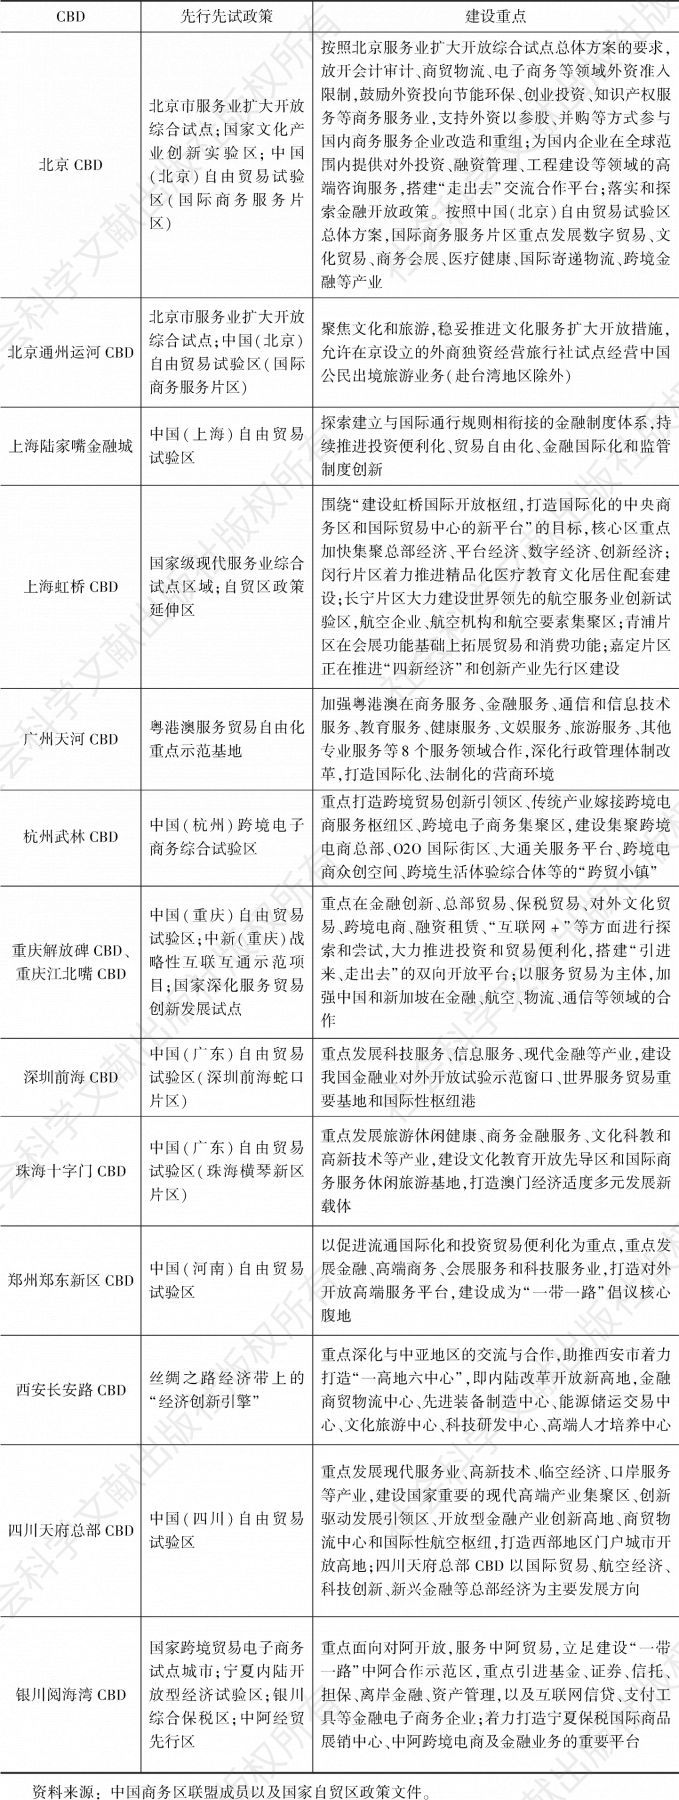 表2 2019年中国部分CBD服务业开放先行先试情况